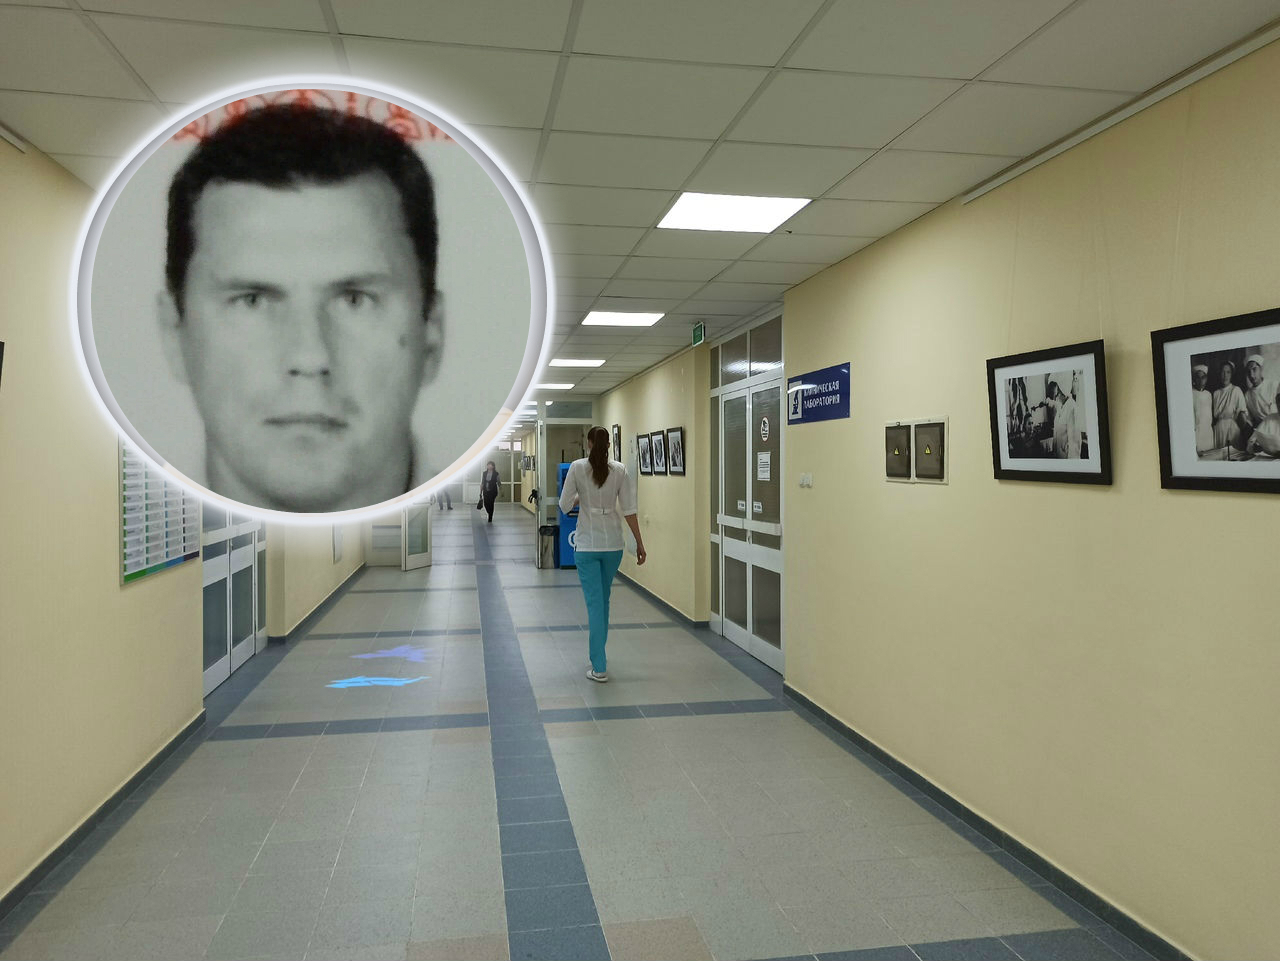 "А мало ли детей тронет": опасный пациент сбежал из психбольницы под Ярославлем